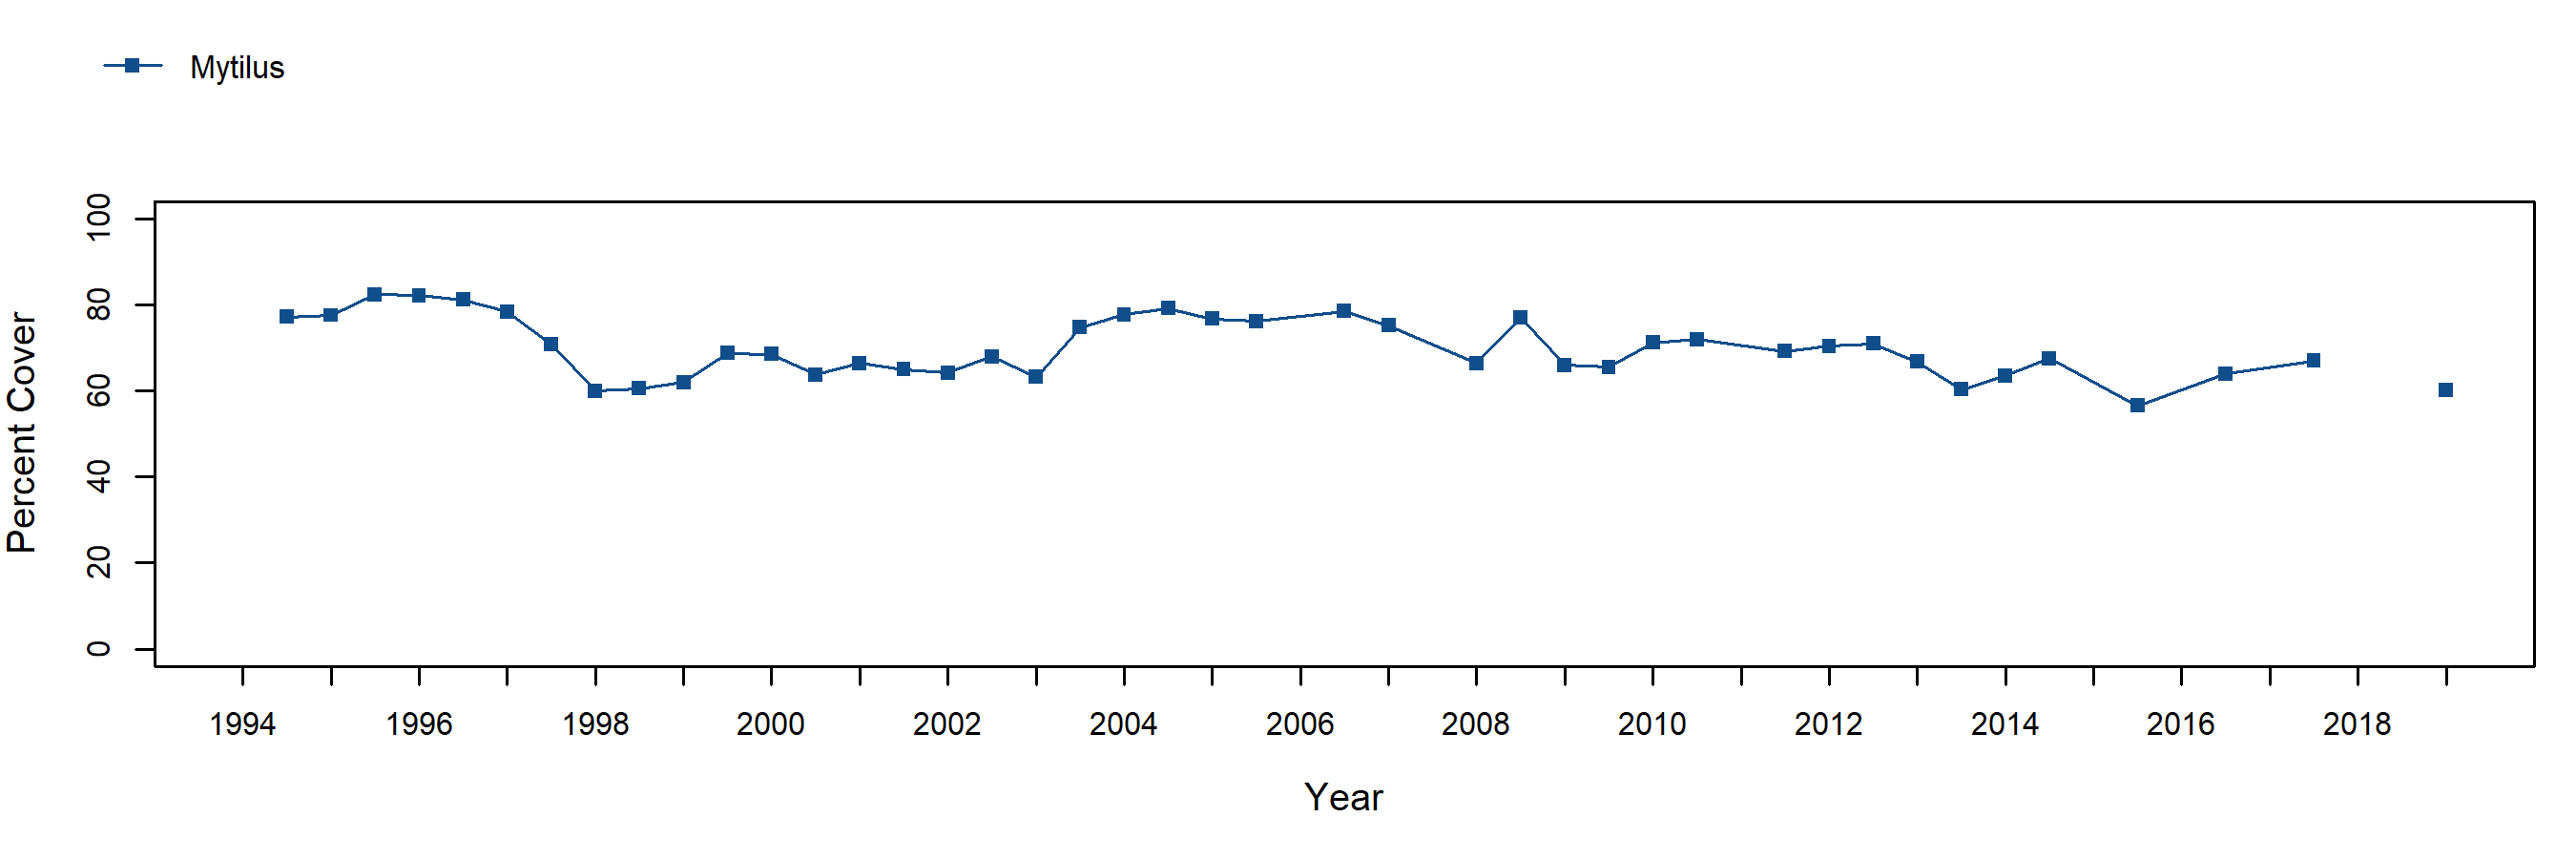 Fraser Cove Mytilus trend plot